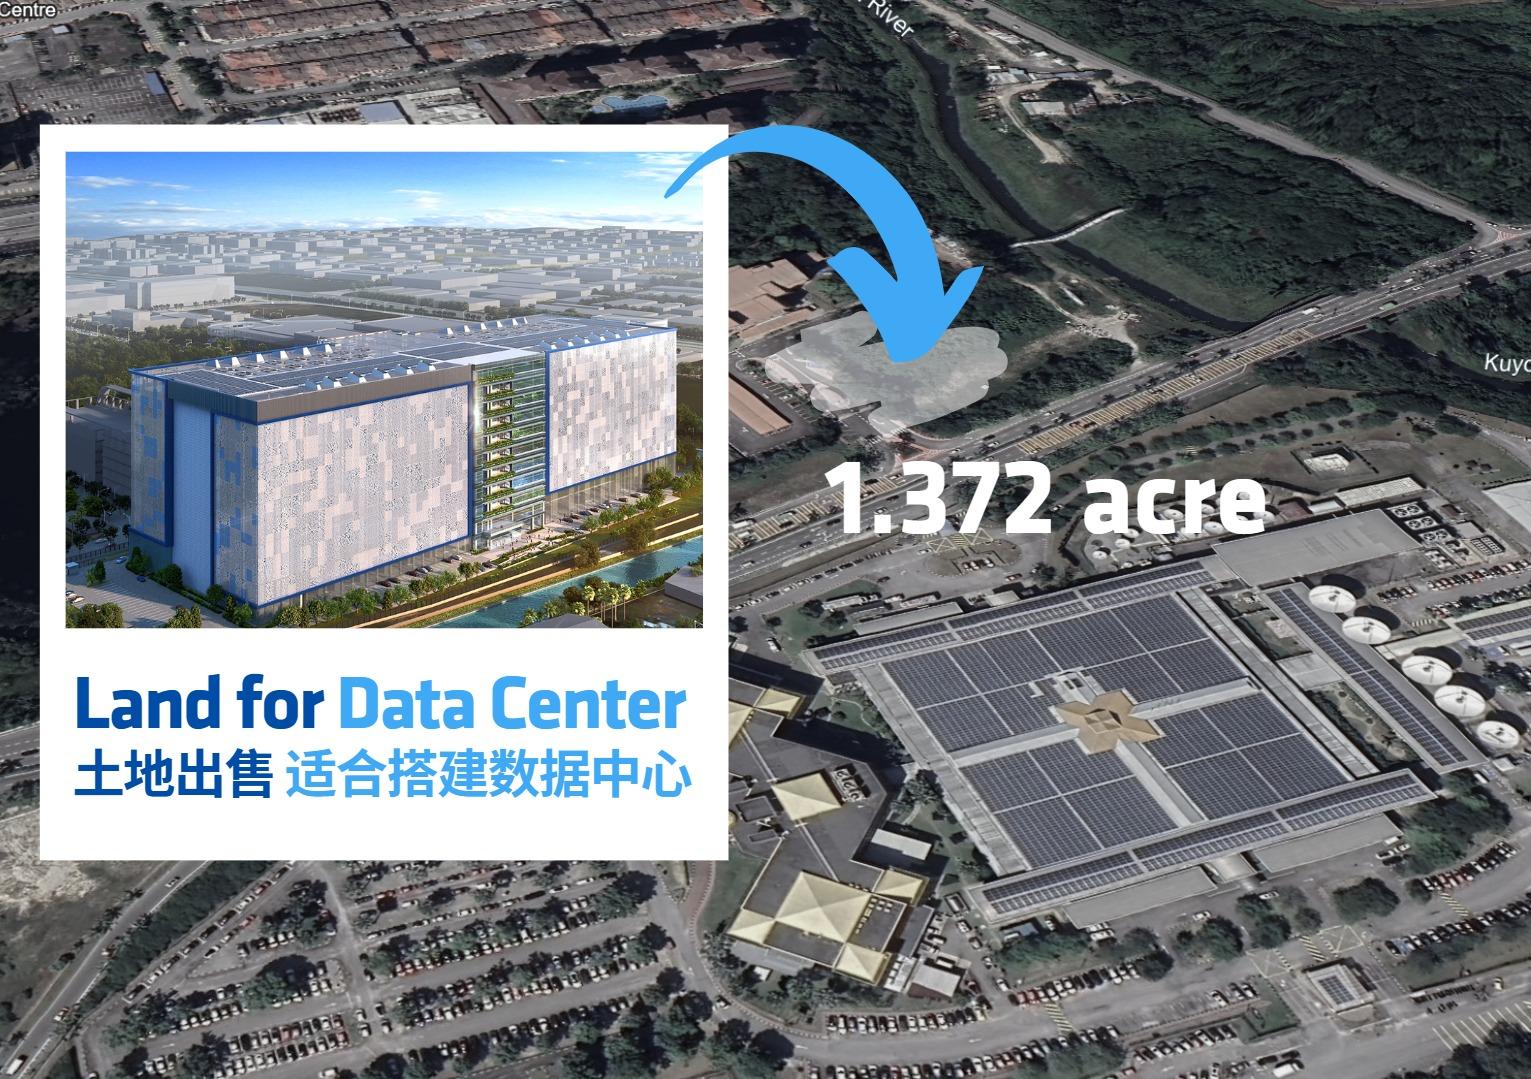 1.372 acres Prime land suitable for Data Center & Office at TPM é€‚å�ˆå¼€å�‘æ•°æ�®ä¸­å¿ƒå�ŠåŠžå…¬å®¤åœ°çš® TPM